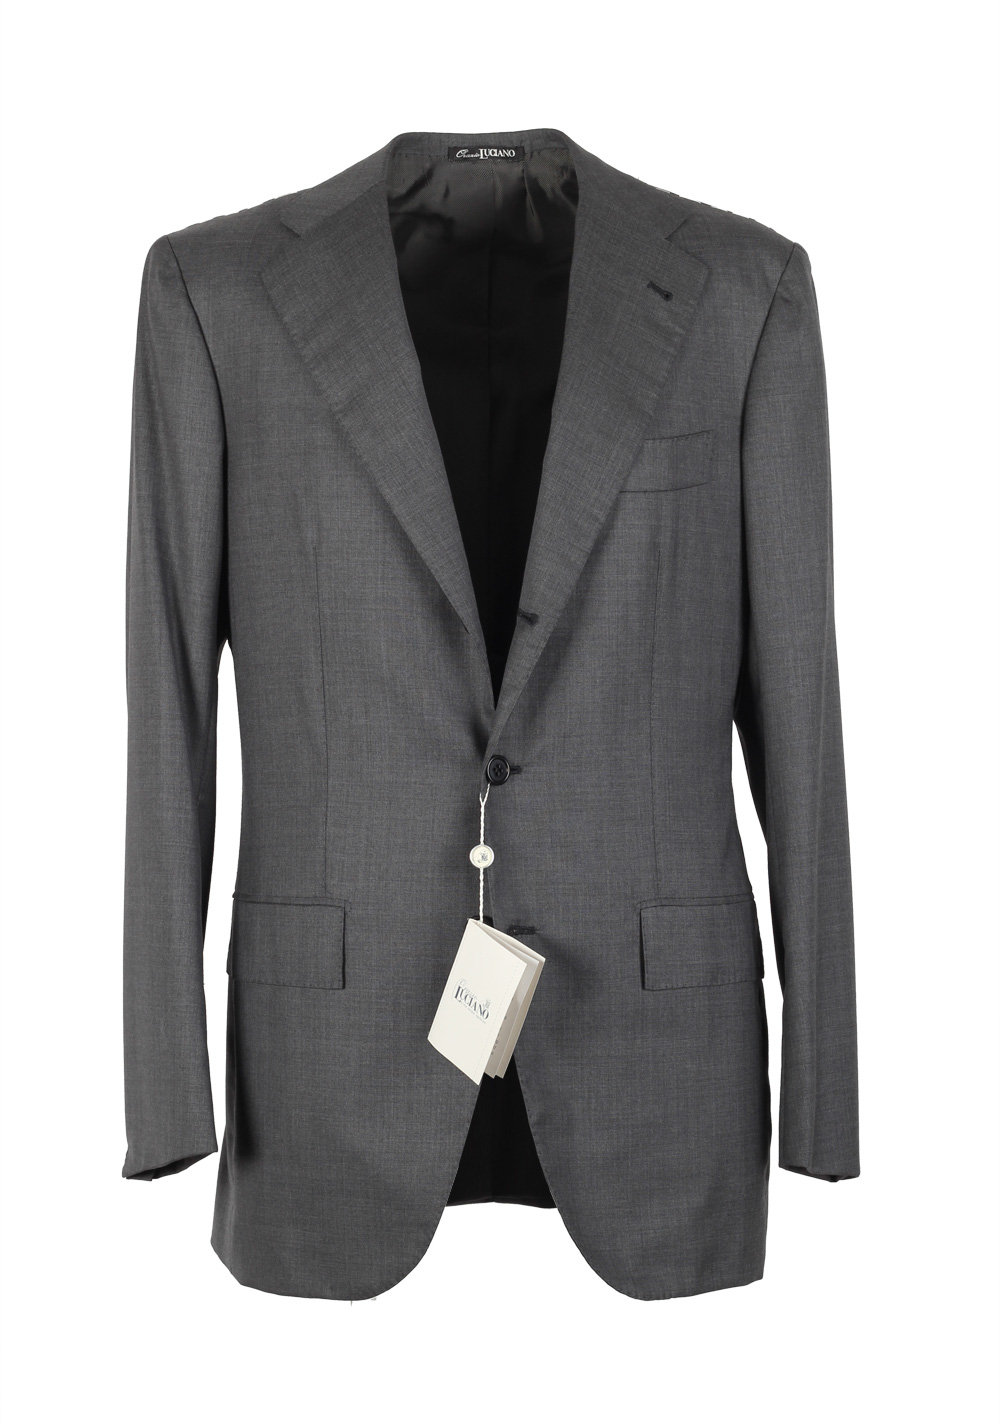 Orazio Luciano La Vera Sartoria Napoletana Suit Size 50L / 40L U.S ...